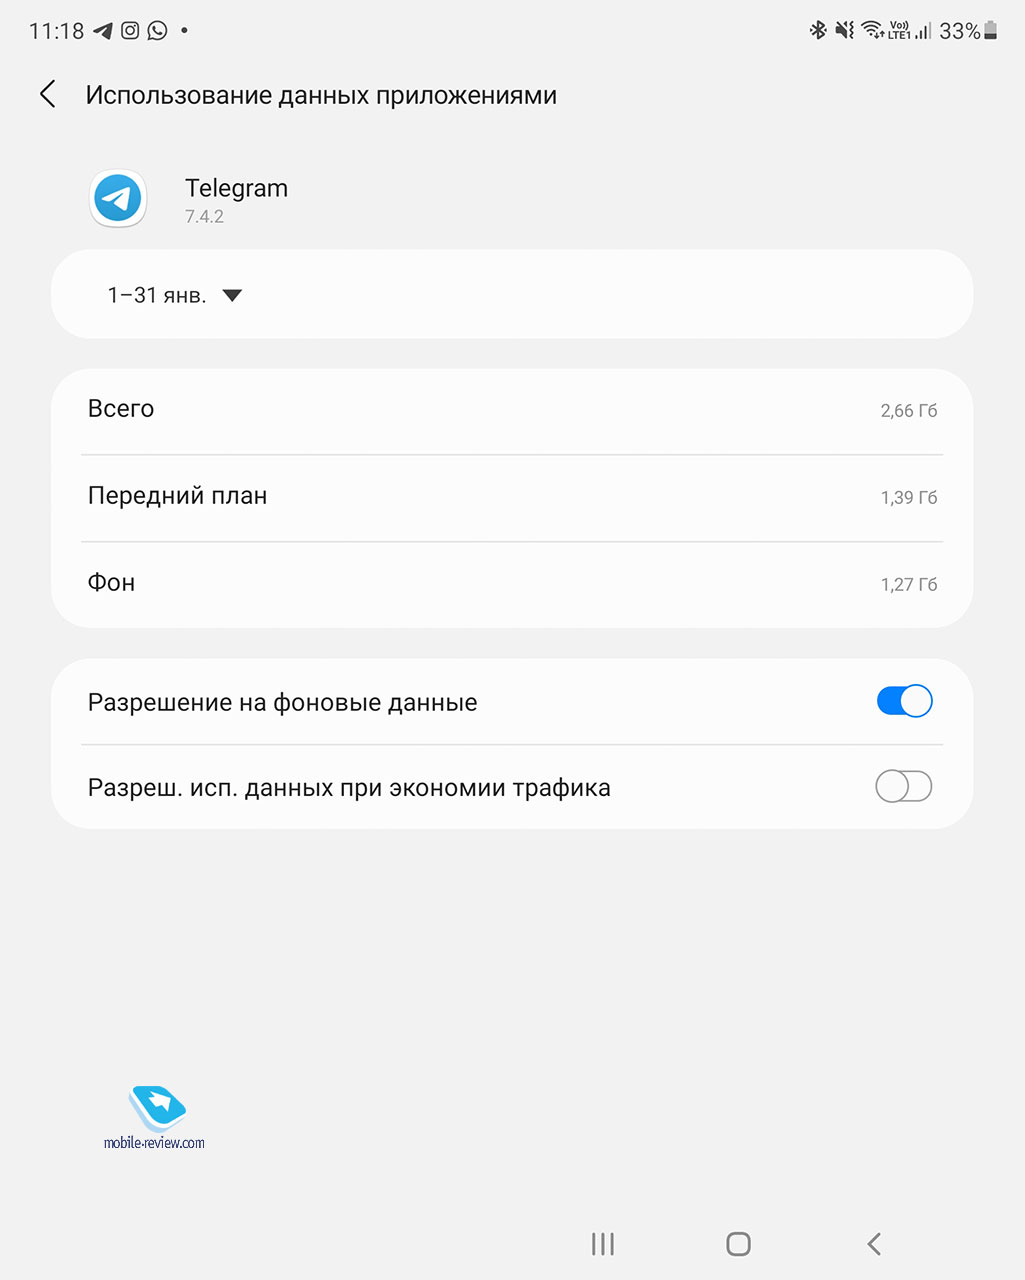 Стоимость содержания Telegram как сервиса. Экономика мессенджера